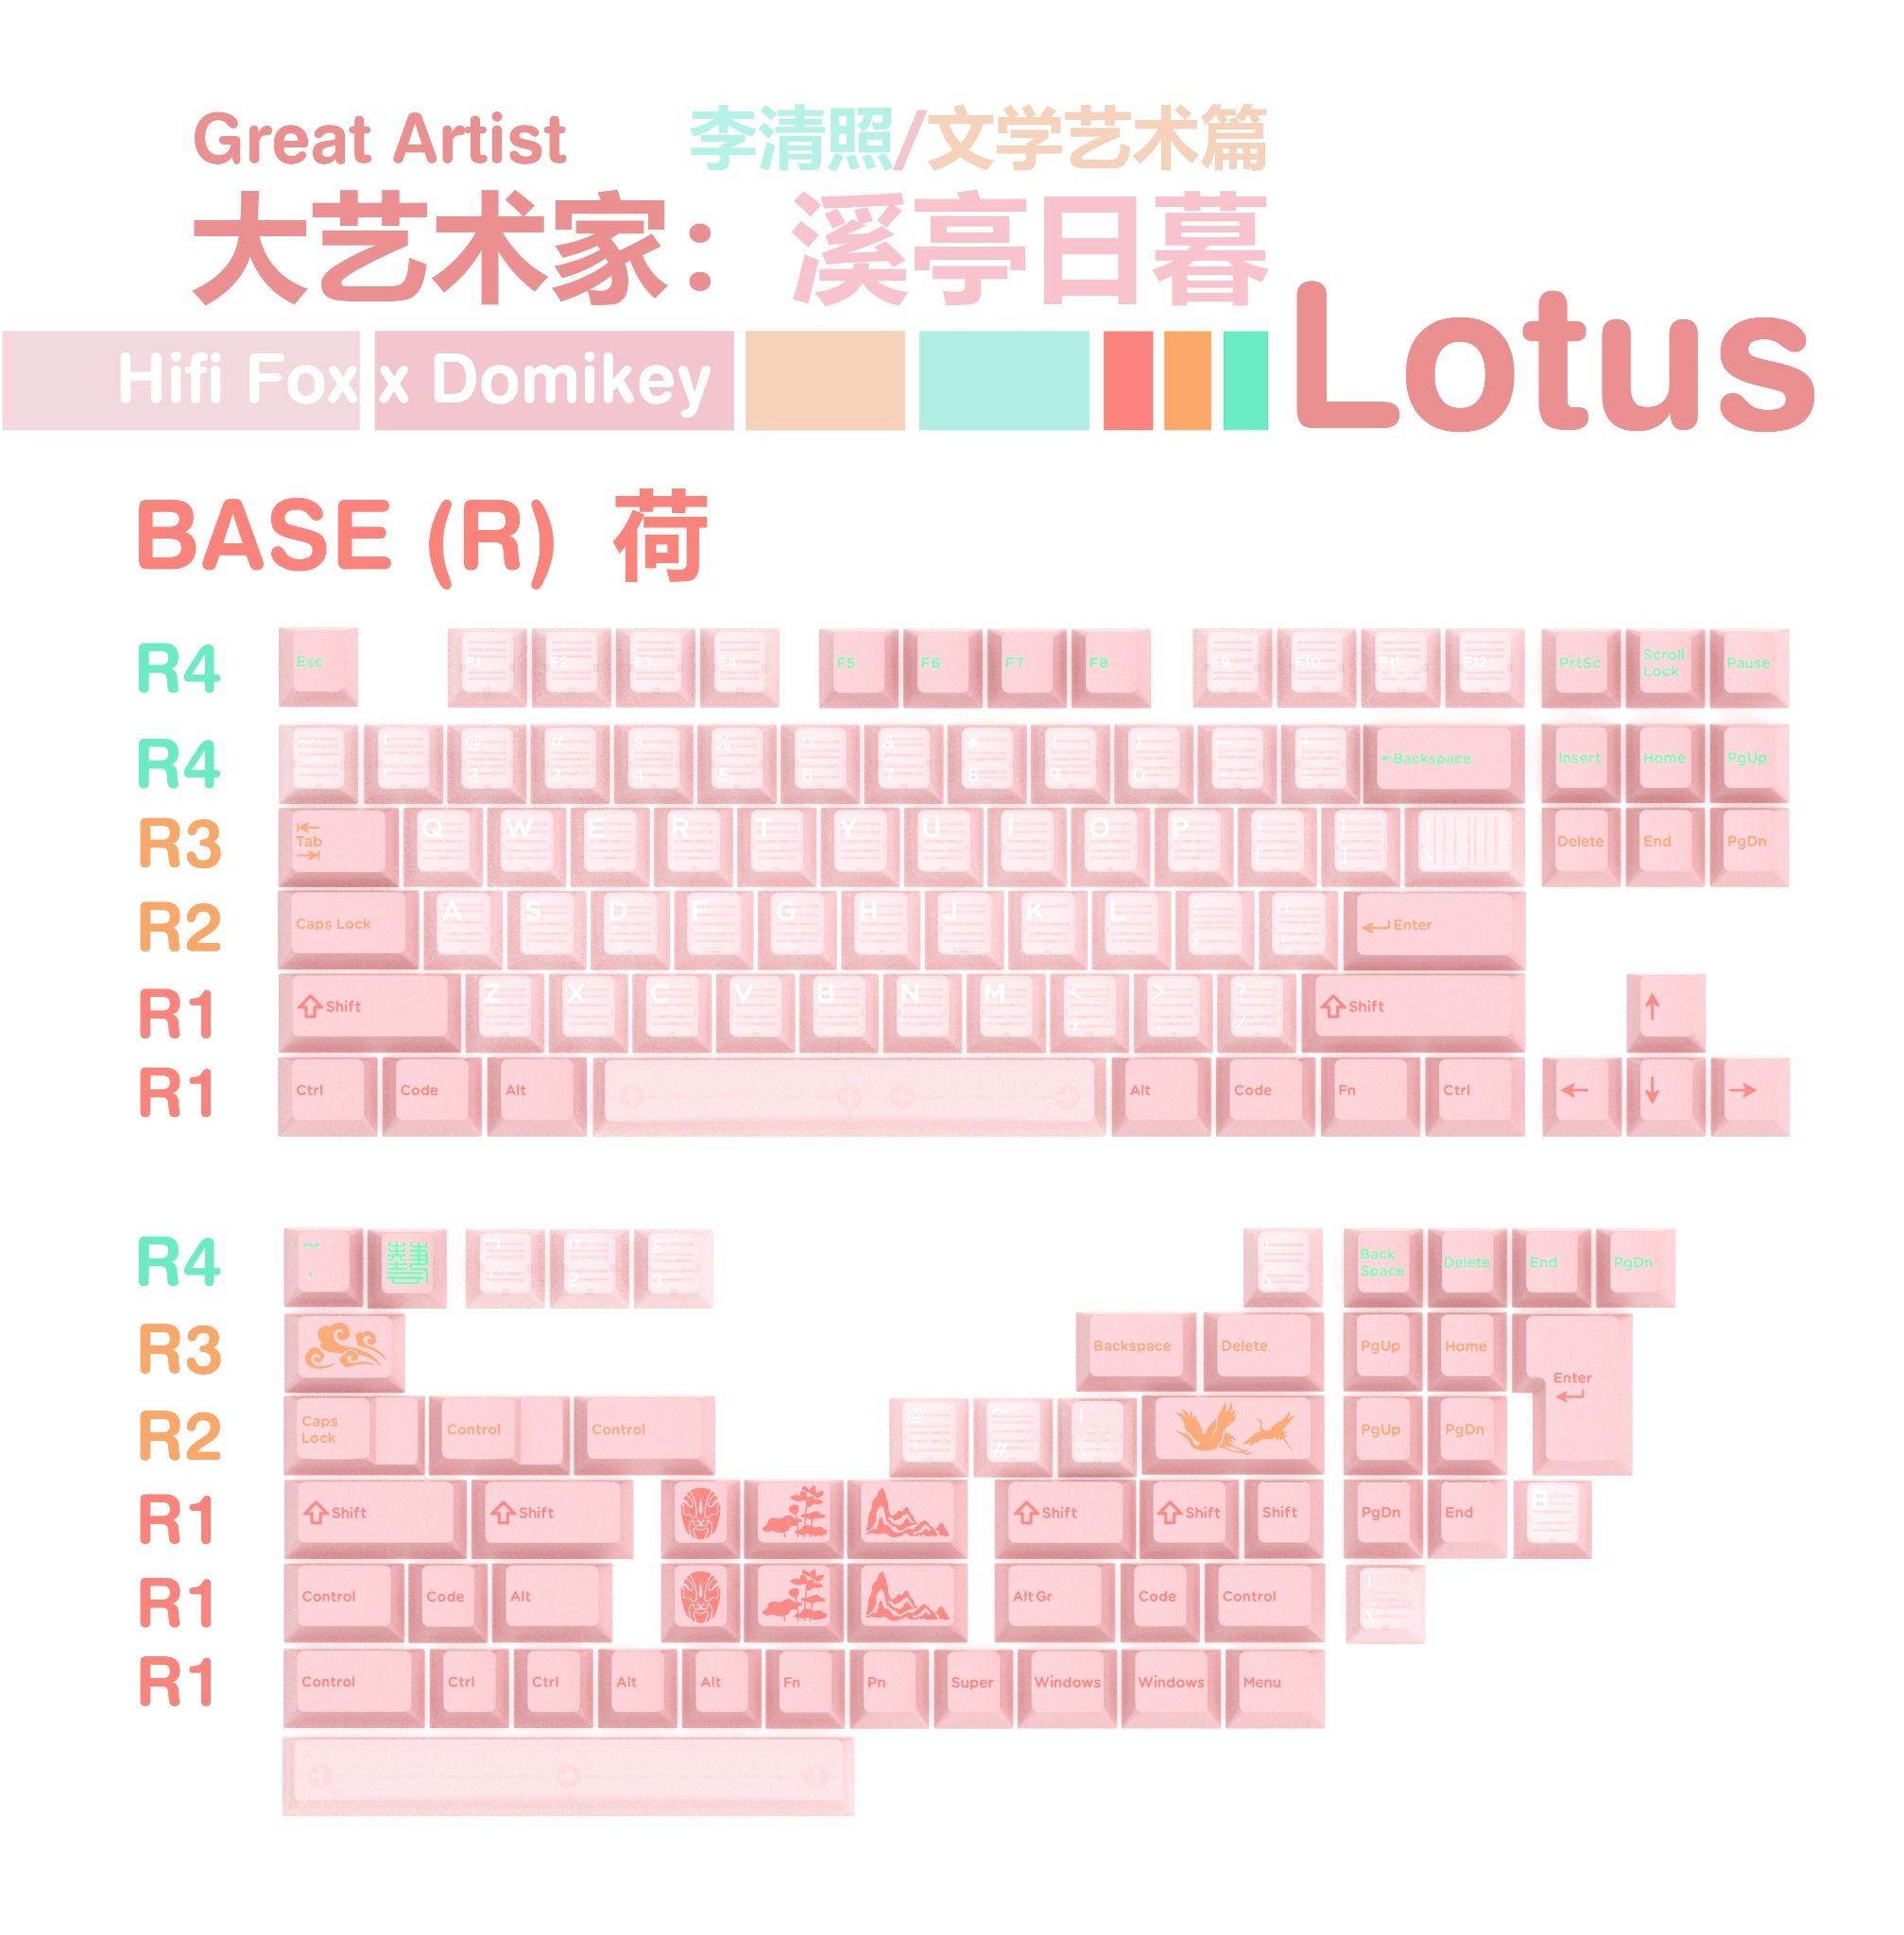  Great Artist Lotus Keycap Set 